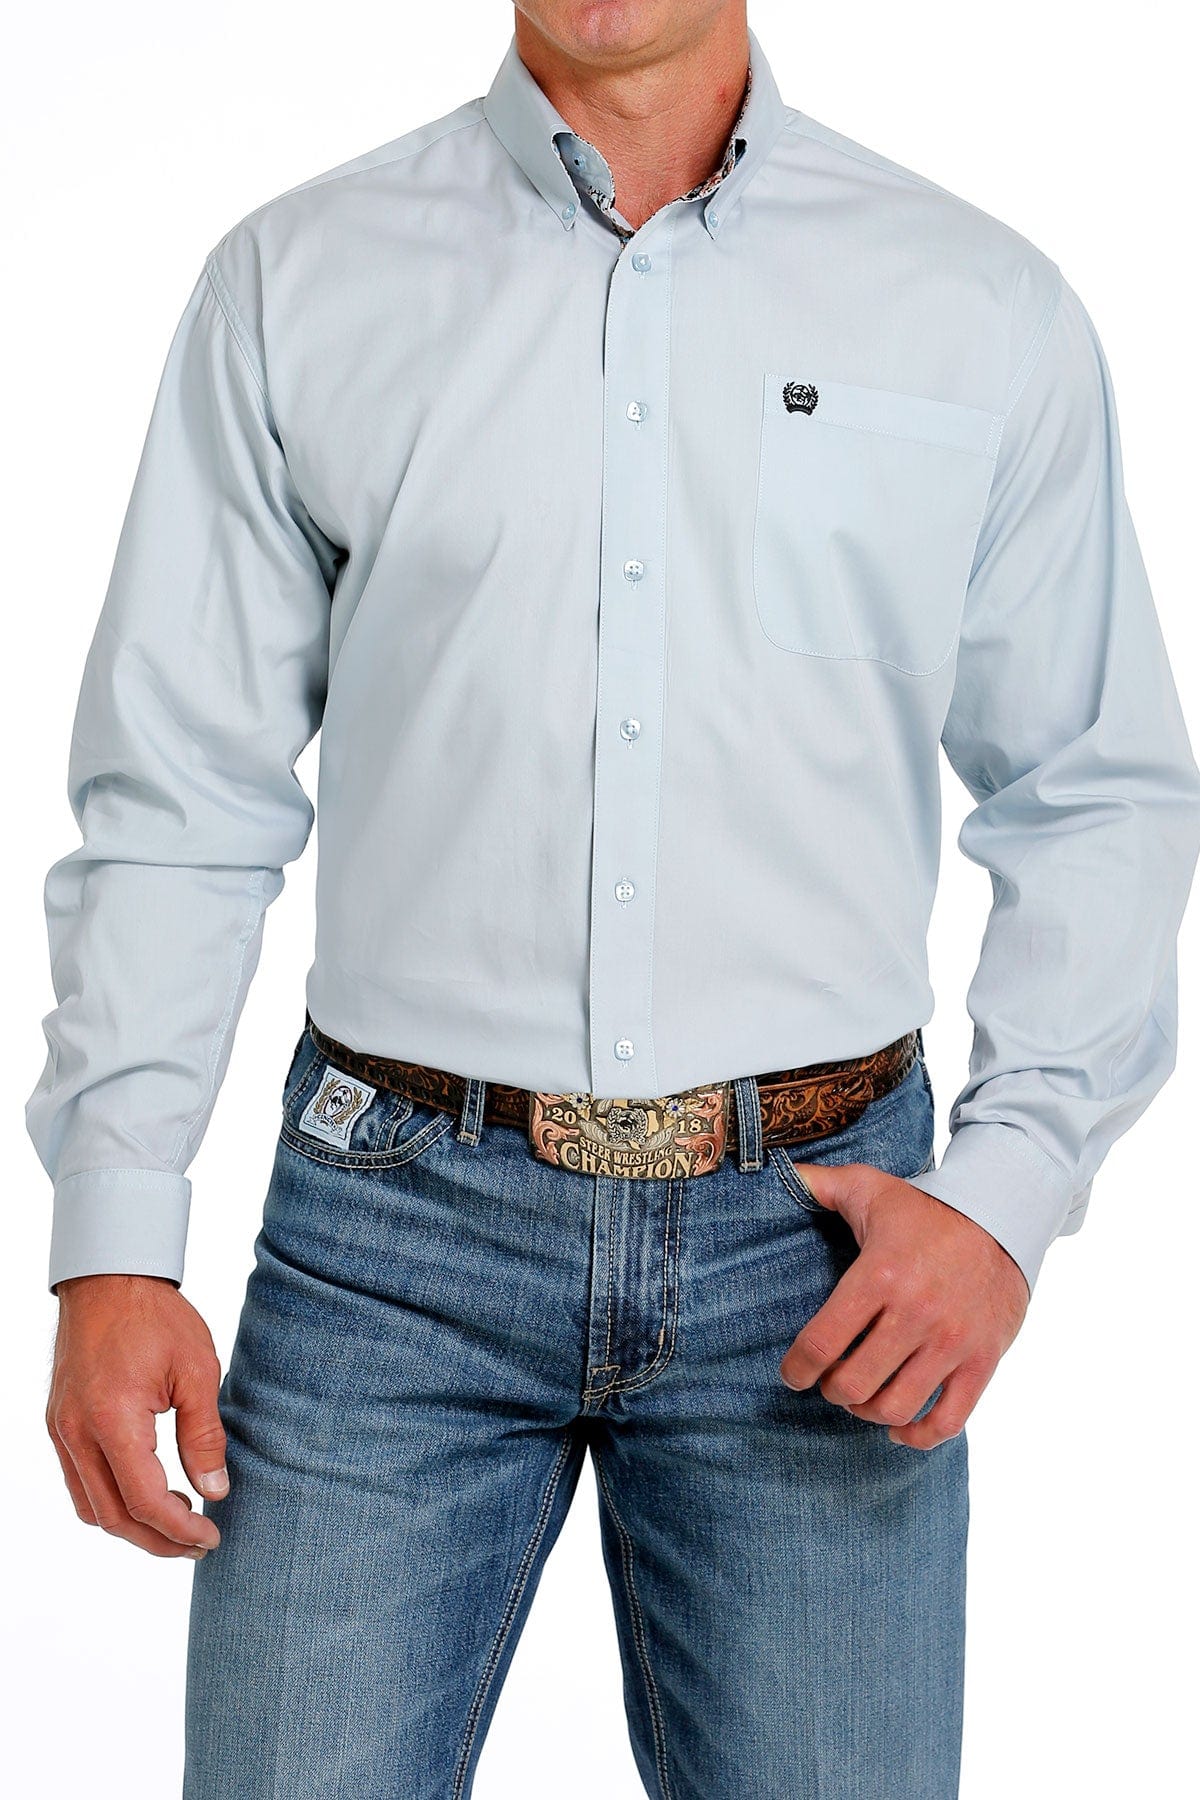 CINCH Mens - Shirt - Woven - Long Sleeve - Button MTW1105616